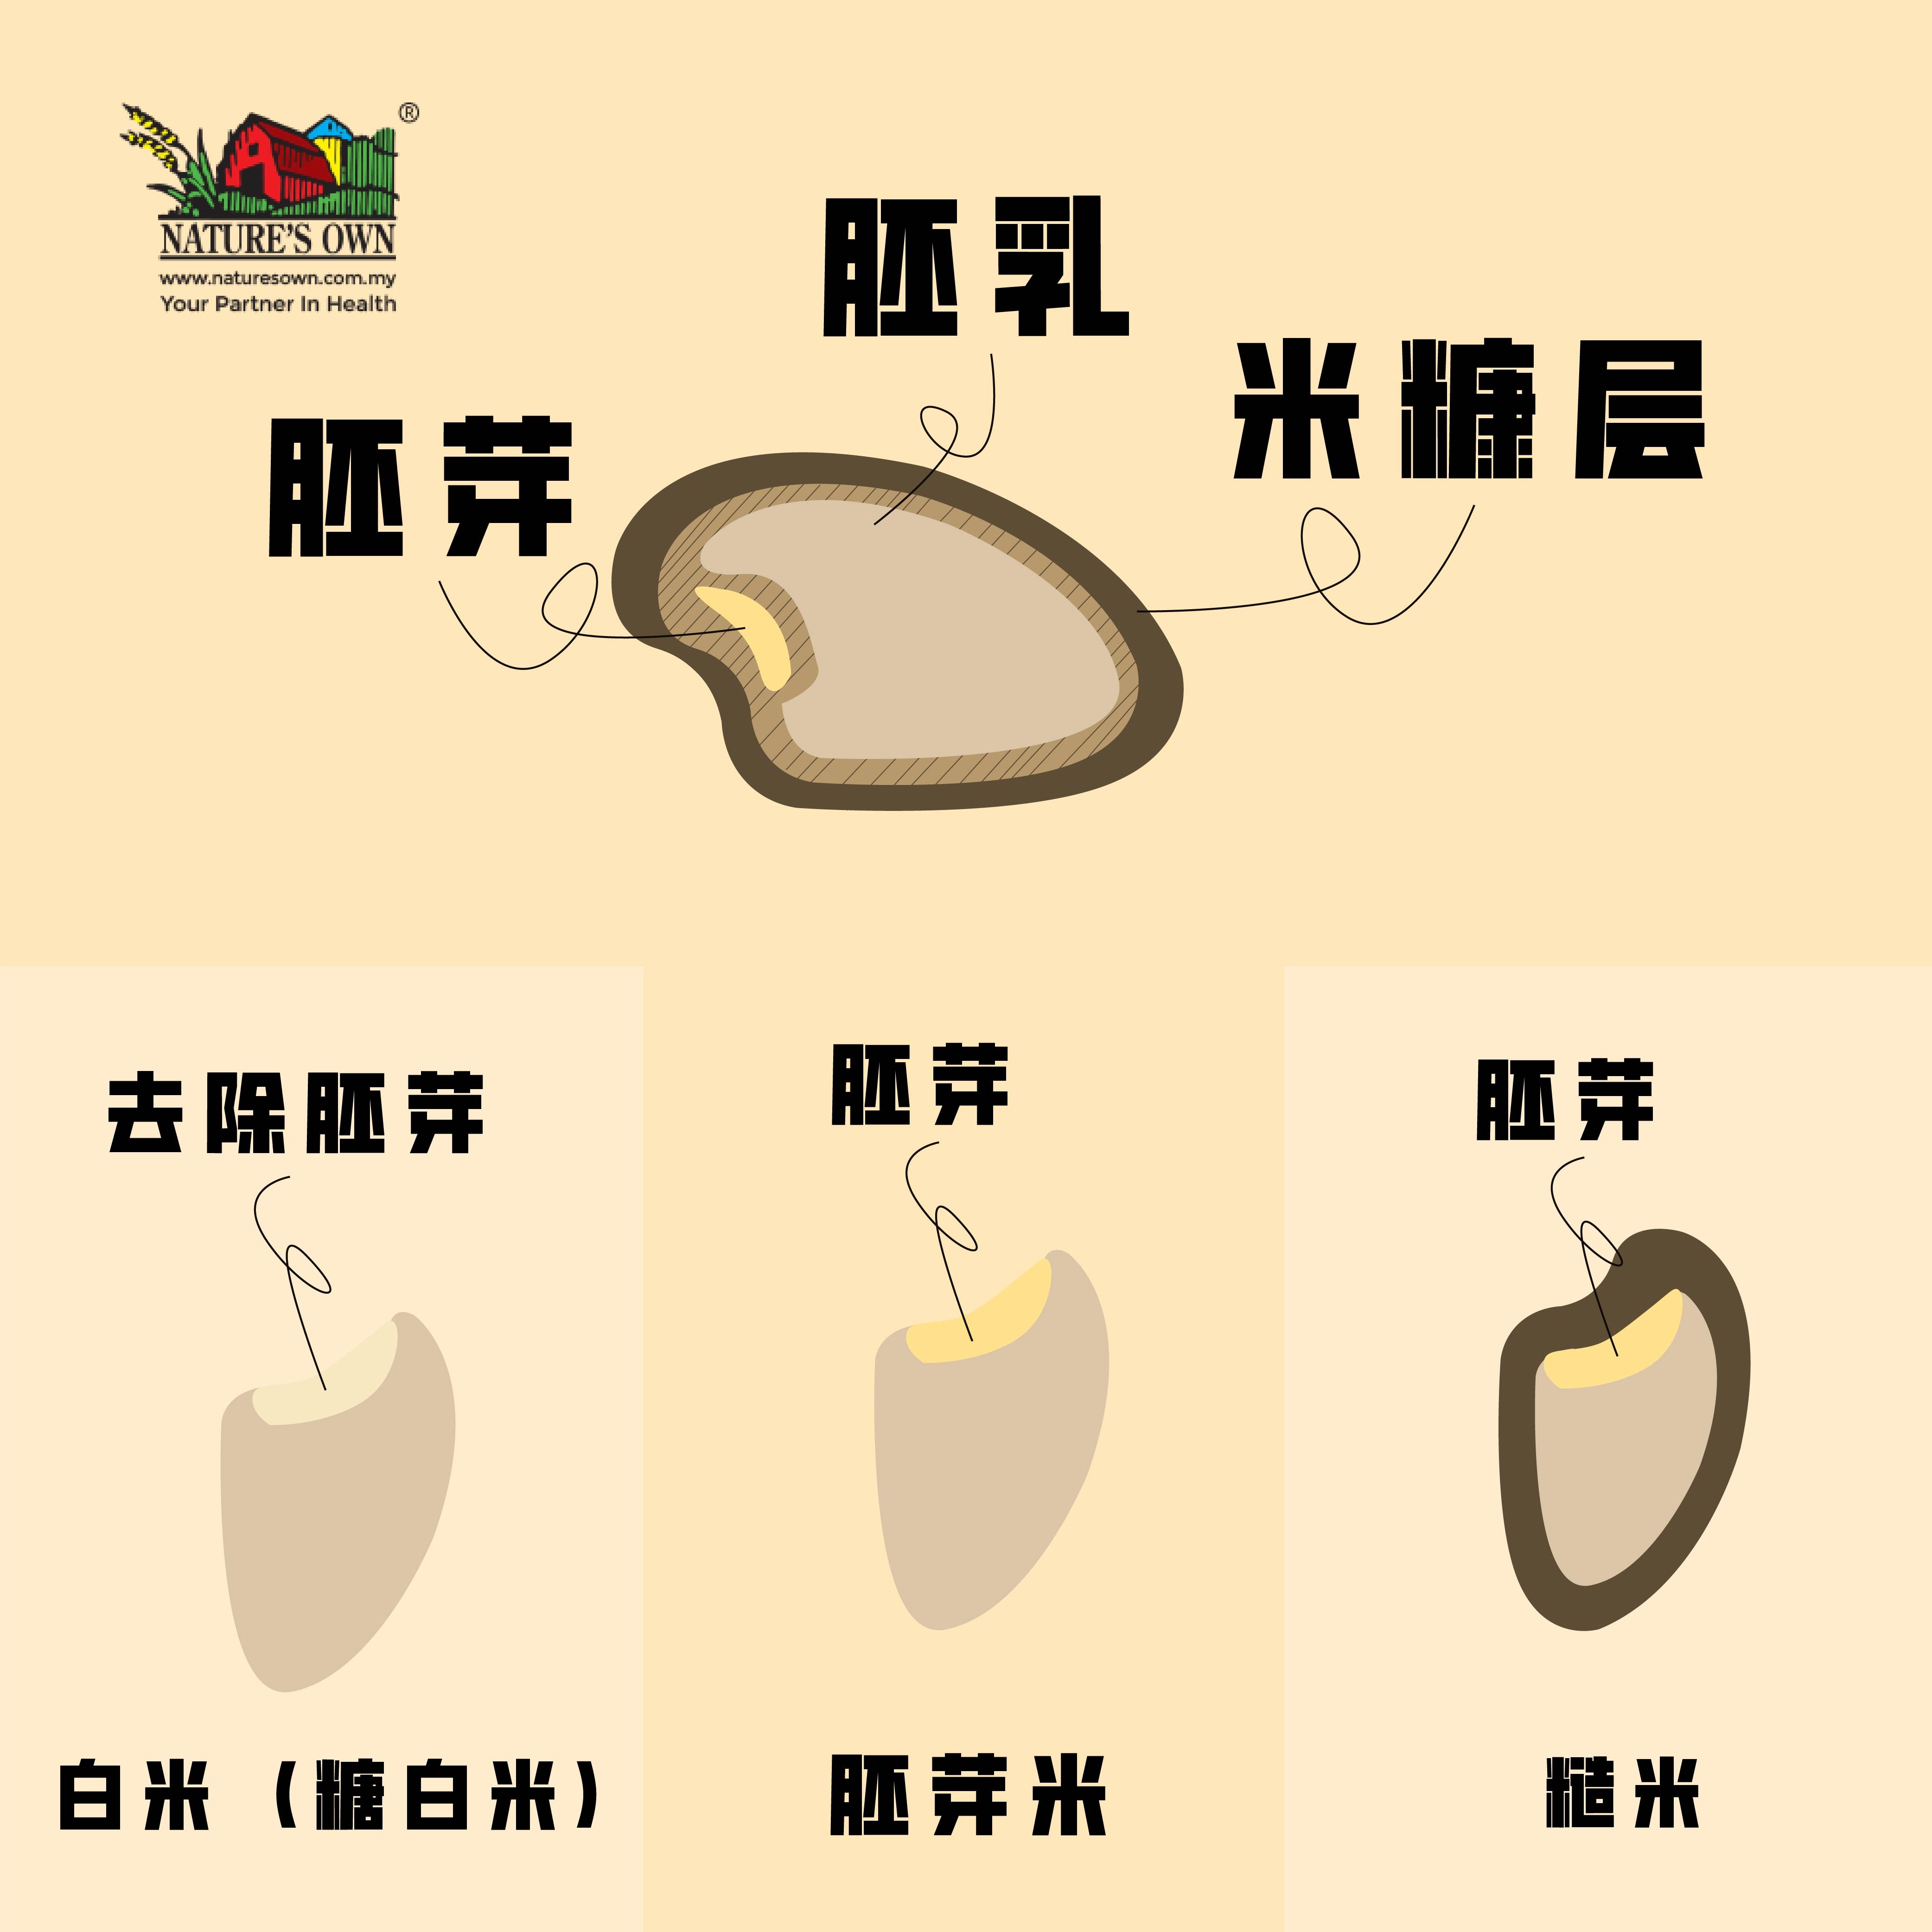 糙米，胚芽，胚乳，米糠层